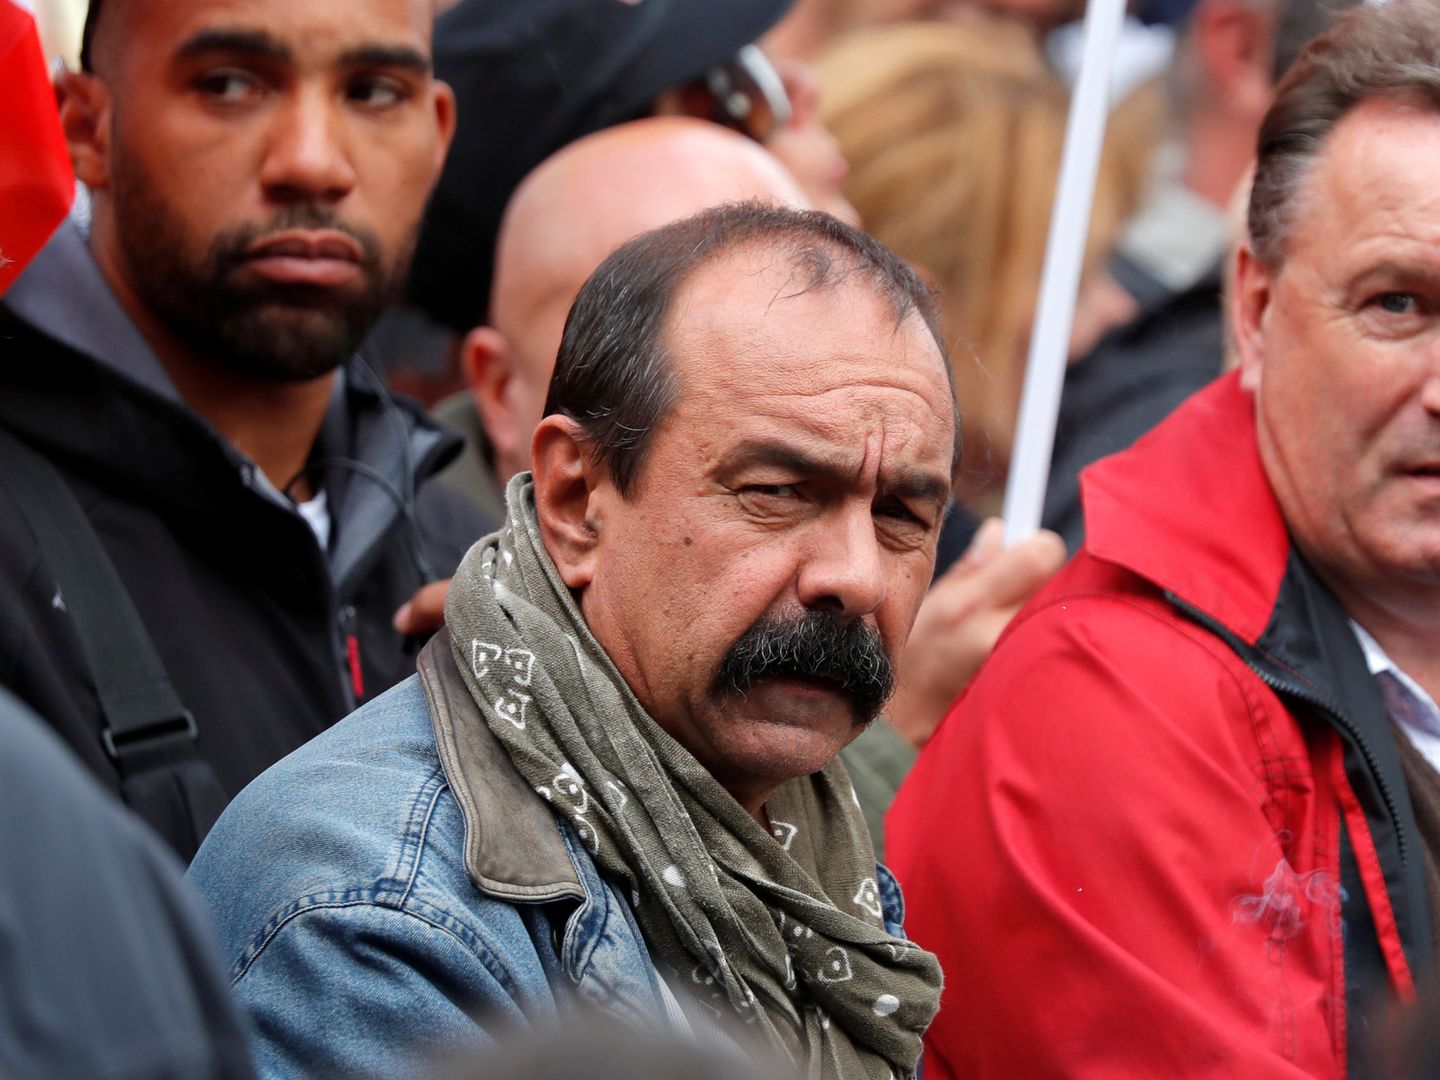 El líder del sindicato CGT Philippe Martinez durante la manifestación en París. (Reuters)